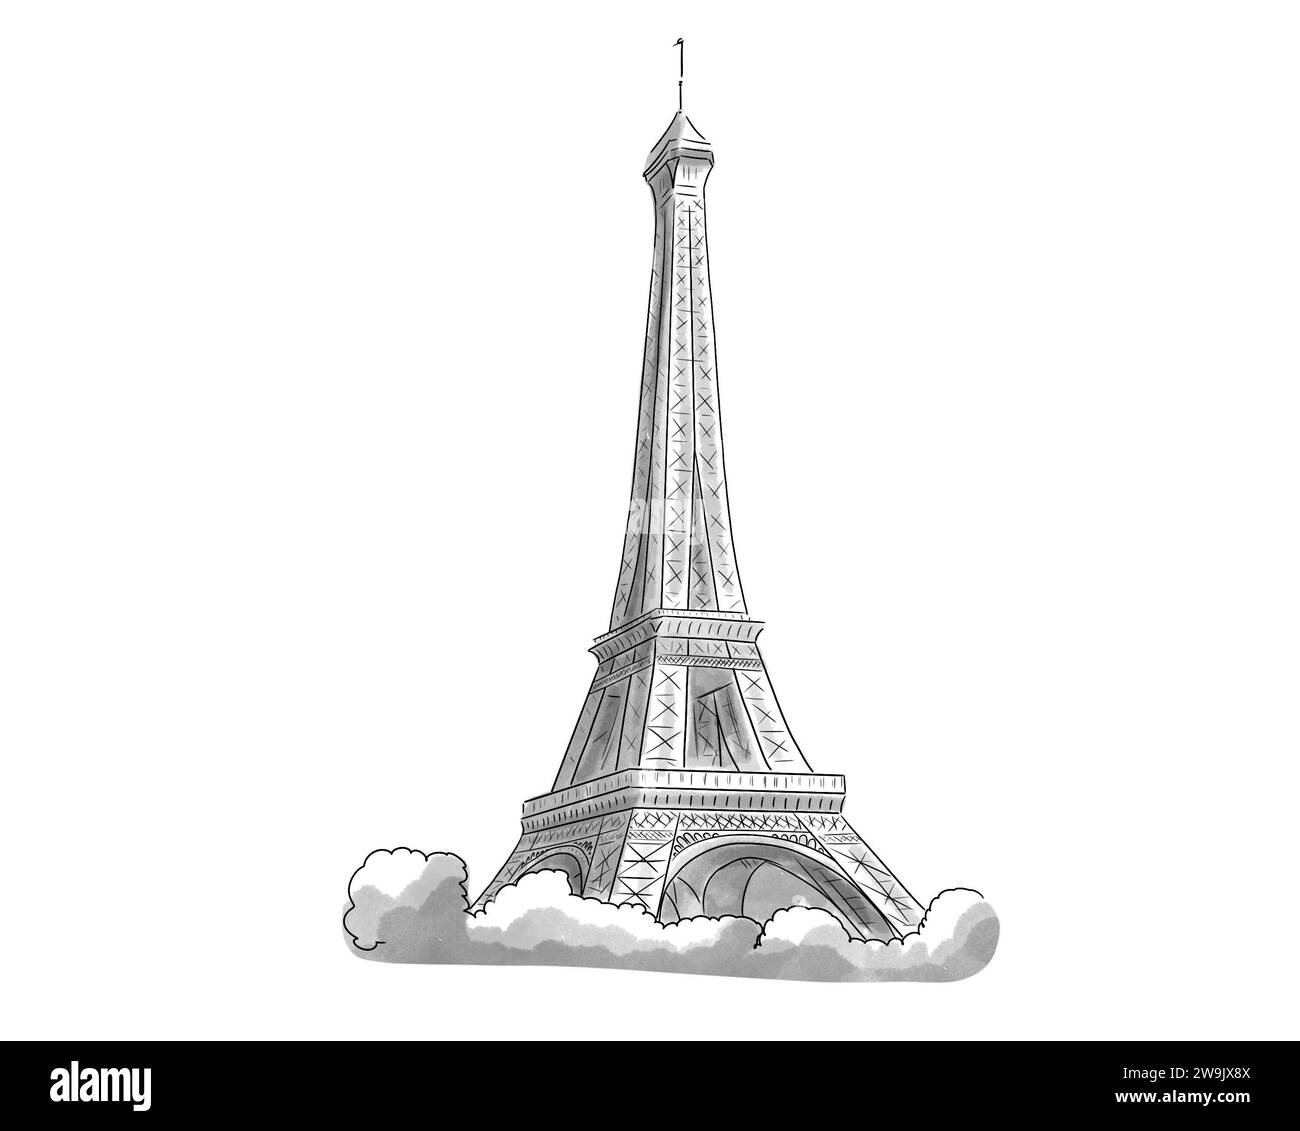 Illustration en noir et blanc de monument de Paris, Tour Eiffel Stock Photo